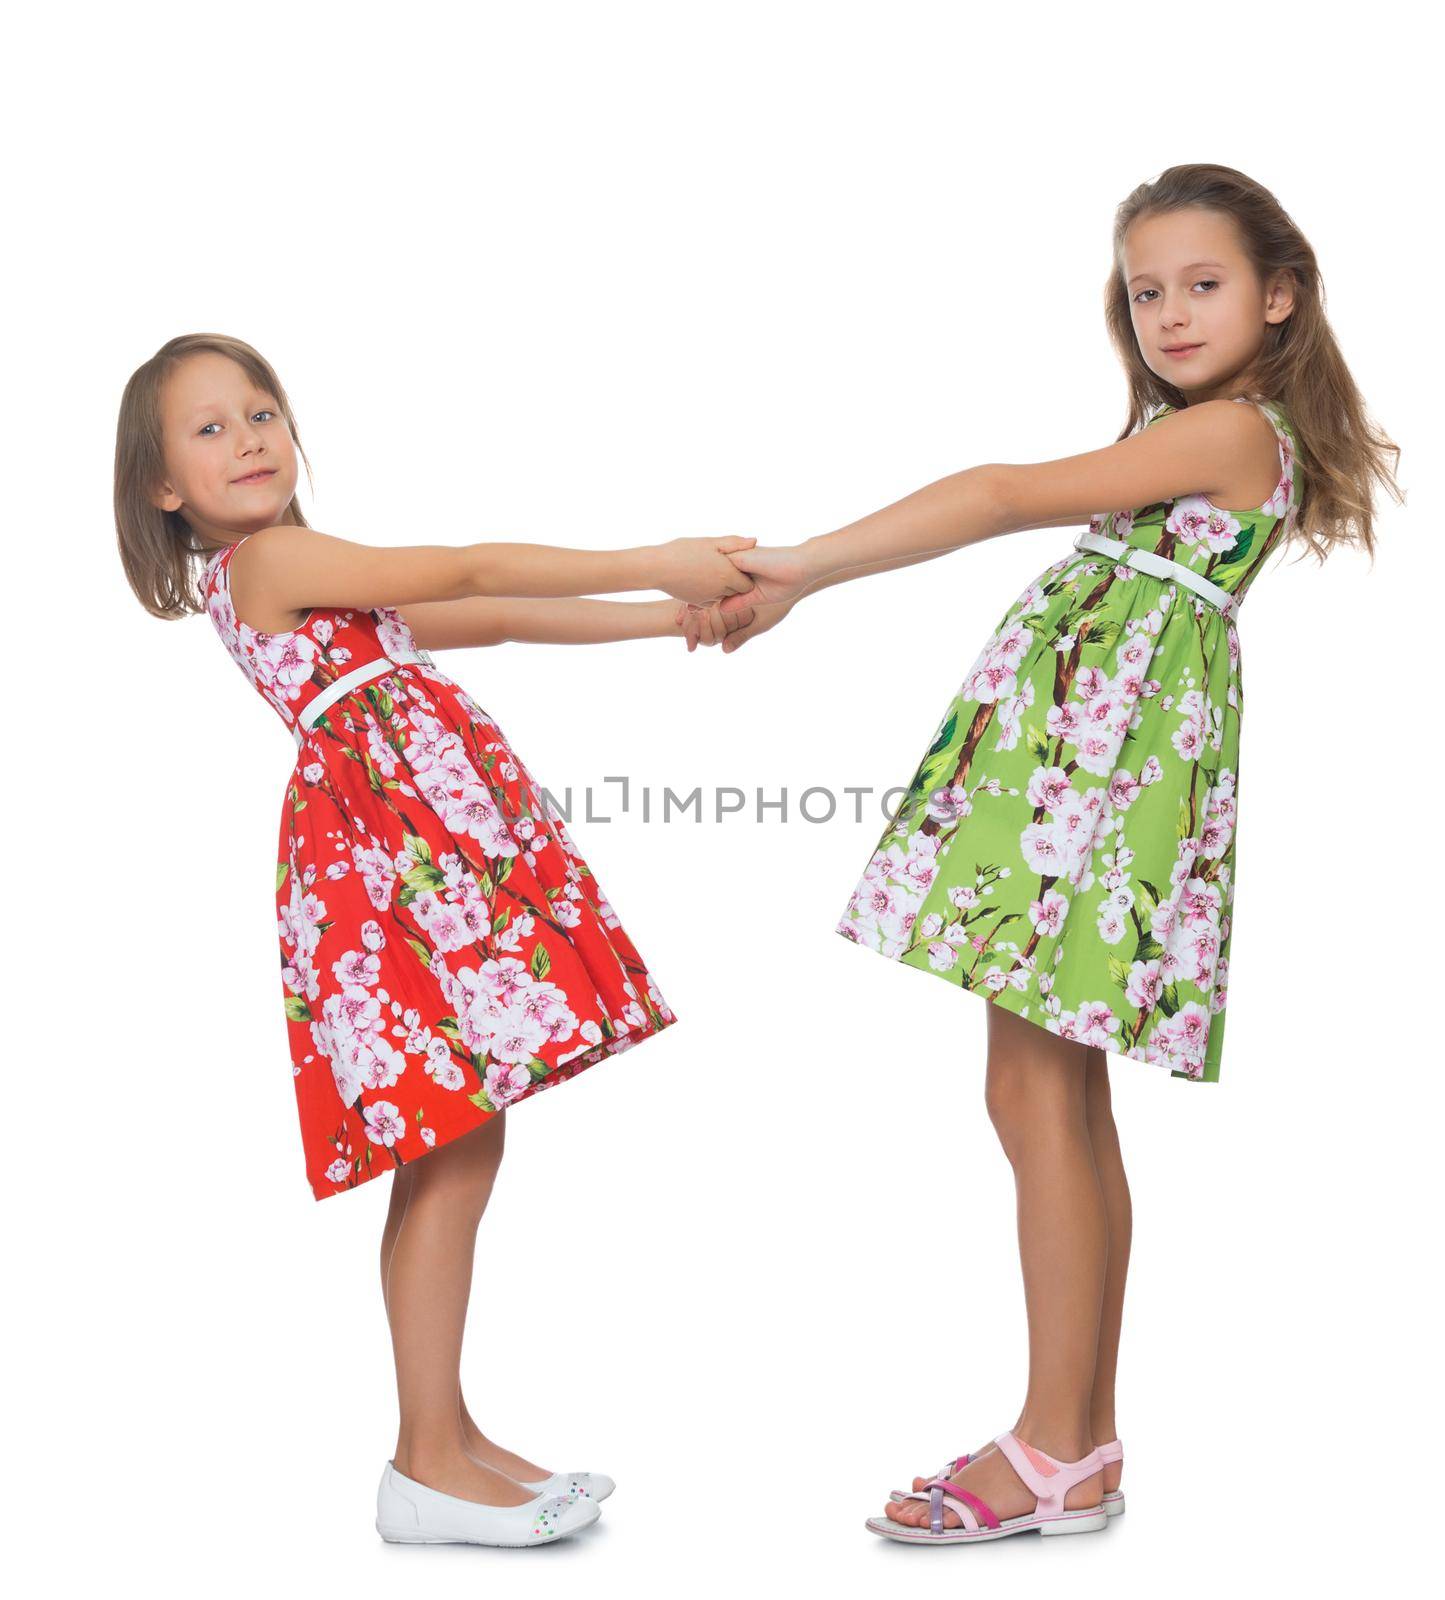 Girls holding hands by kolesnikov_studio